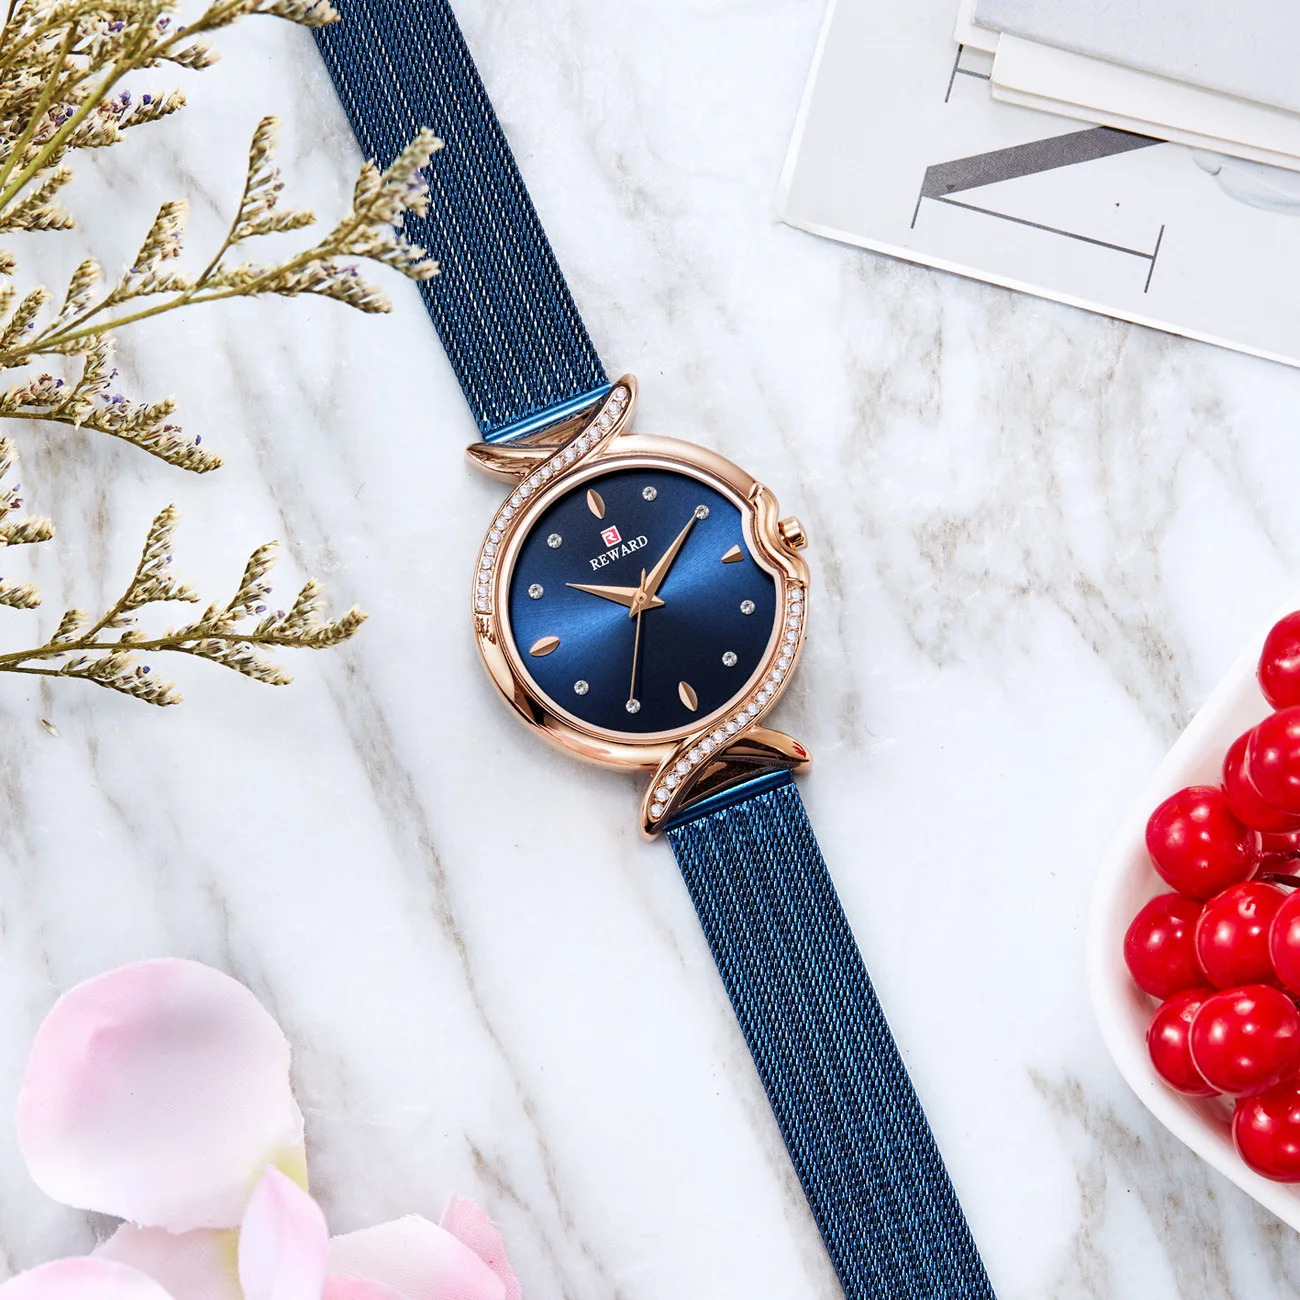 Награда Топ бренд женские часы водонепроницаемые Модные Повседневные кварцевые часы с хронографом женская одежда часы женские часы Relogio Feminino